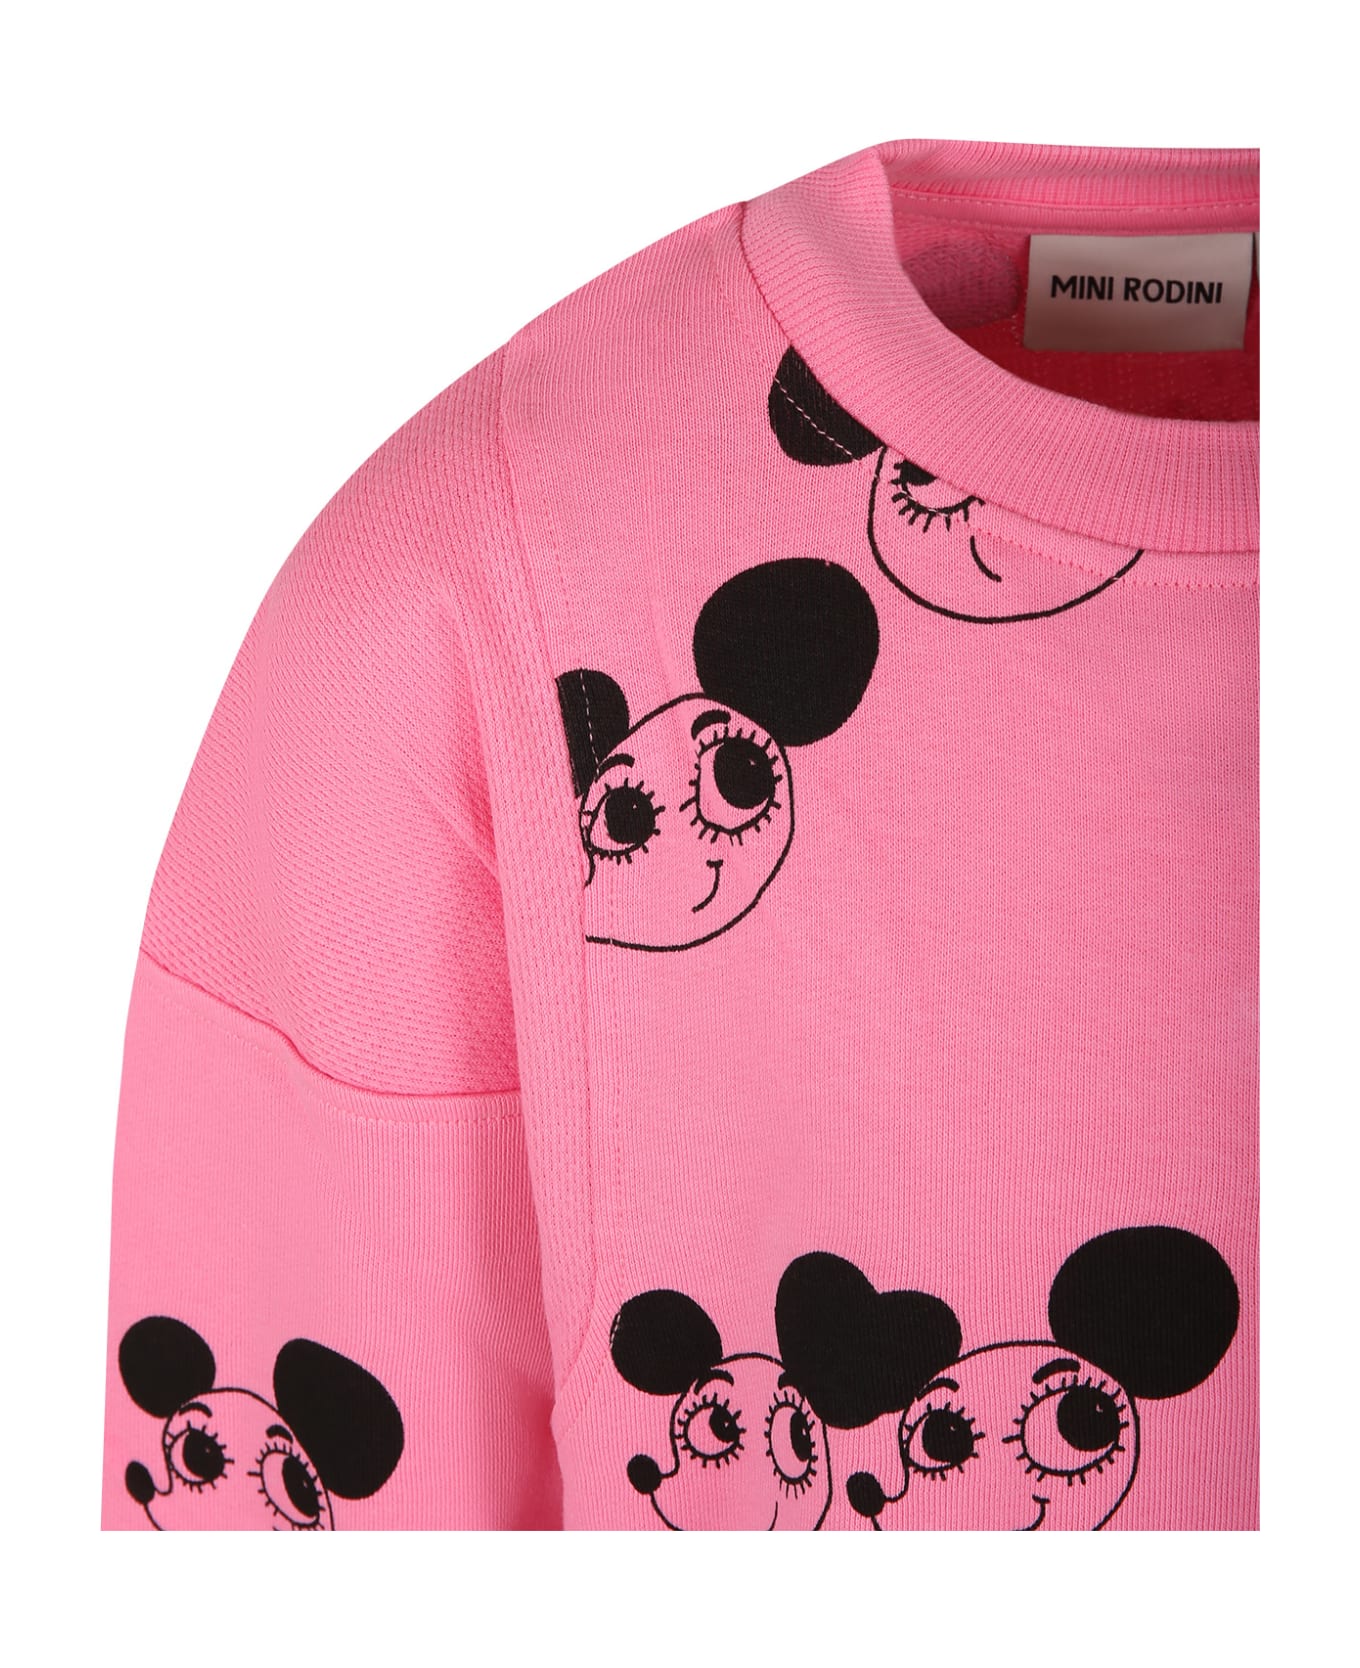 Mini Rodini Pink Sweatshirt For Girl With Mice - Pink